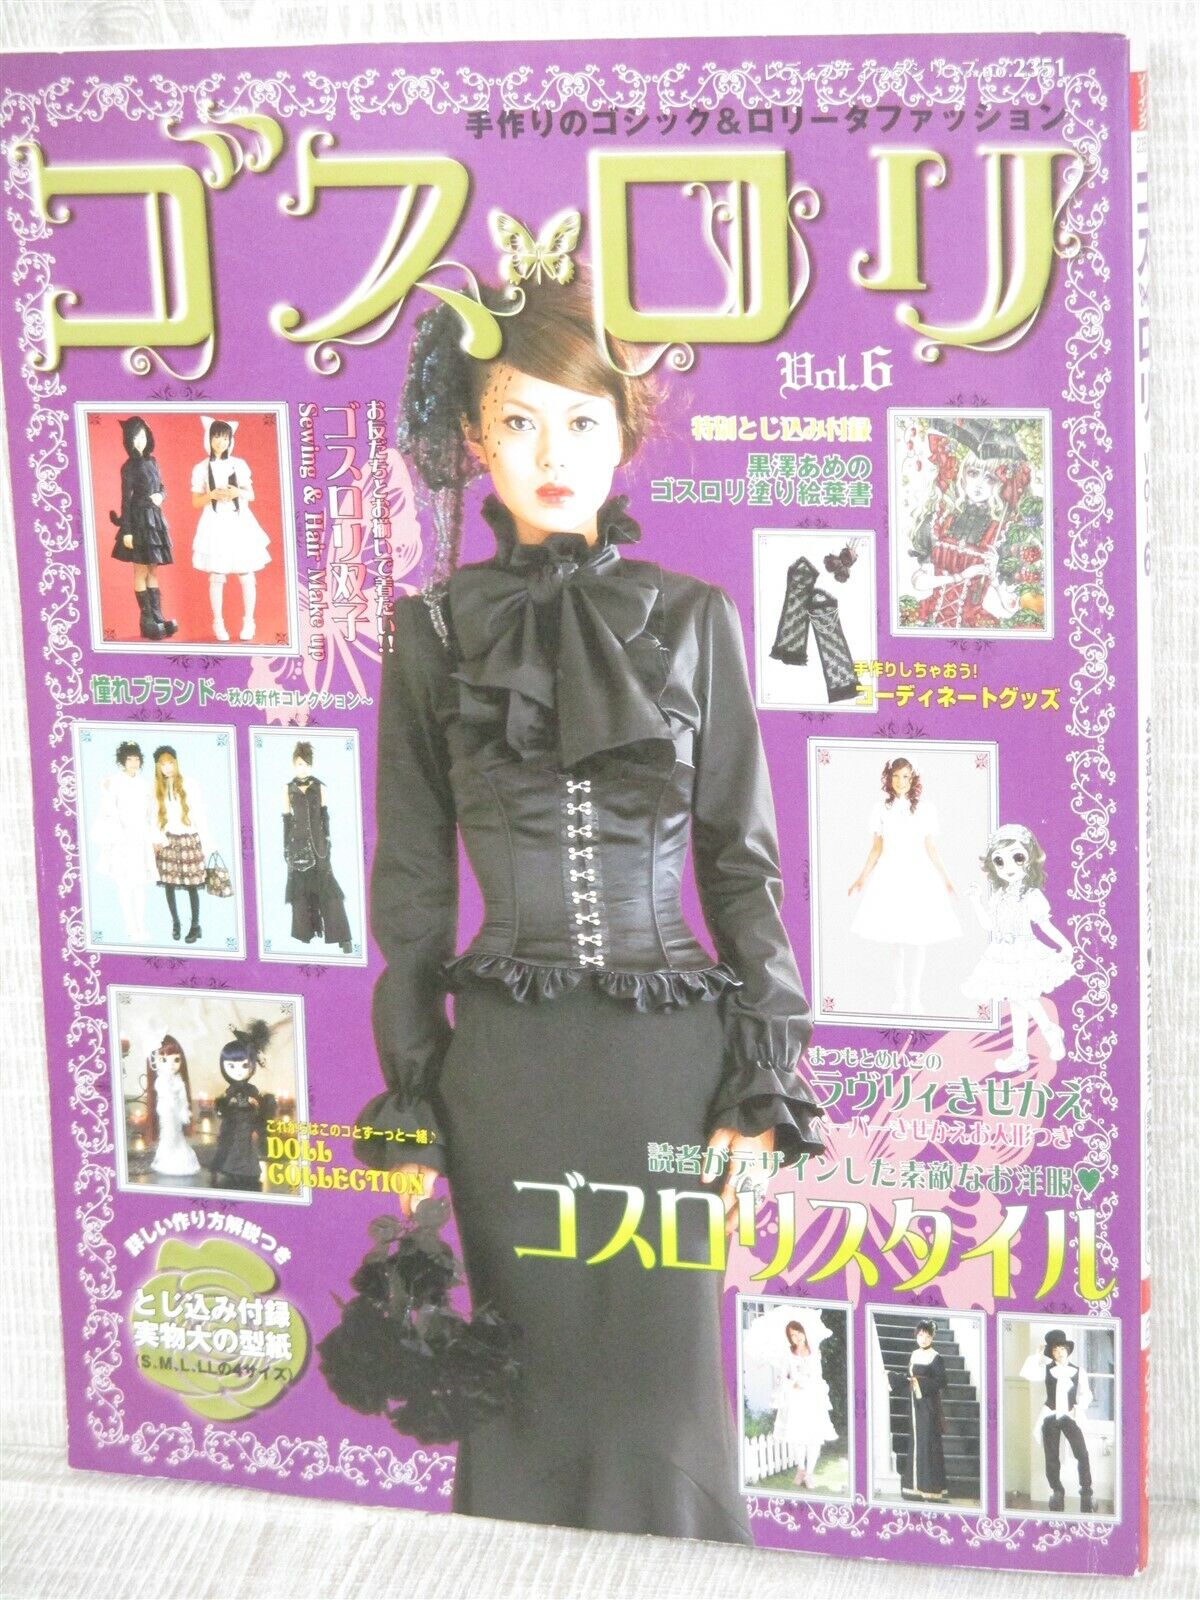 GOTH LOLI 6 w/Pattern SEWING Art Fashion Design Book Japan Gothic Lolita 18